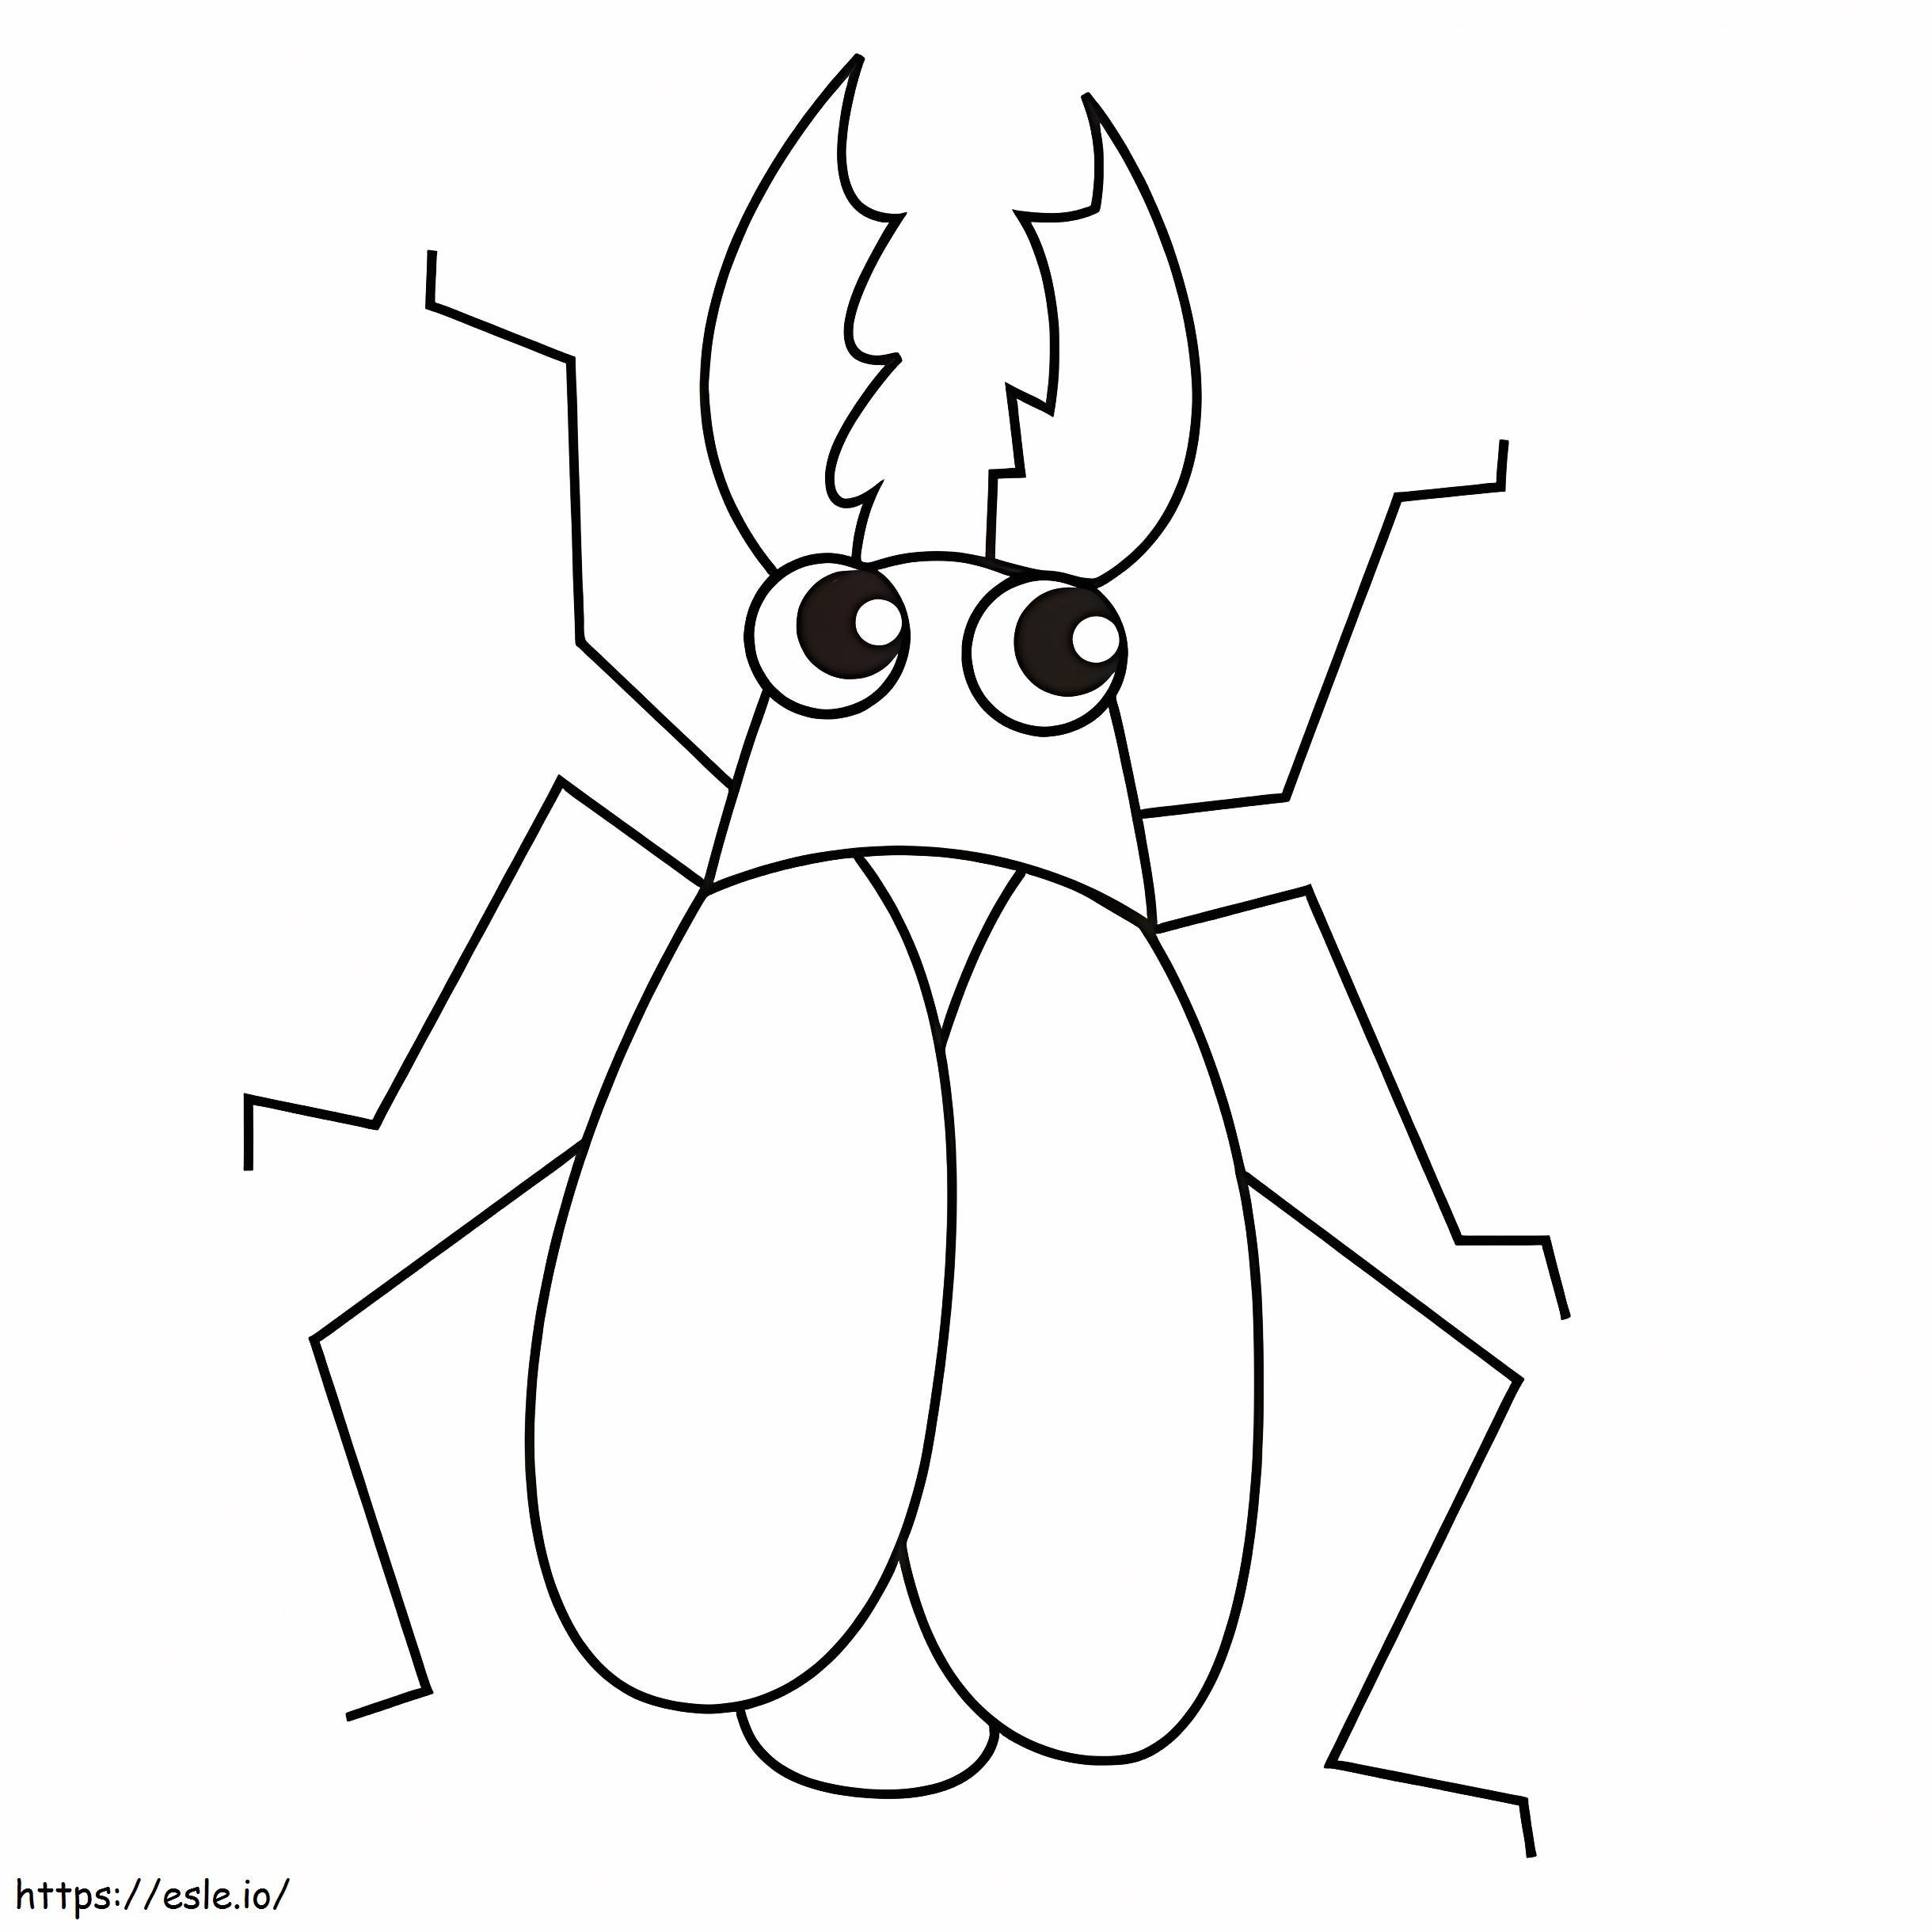 Erittäin helppo Beetle värityskuva